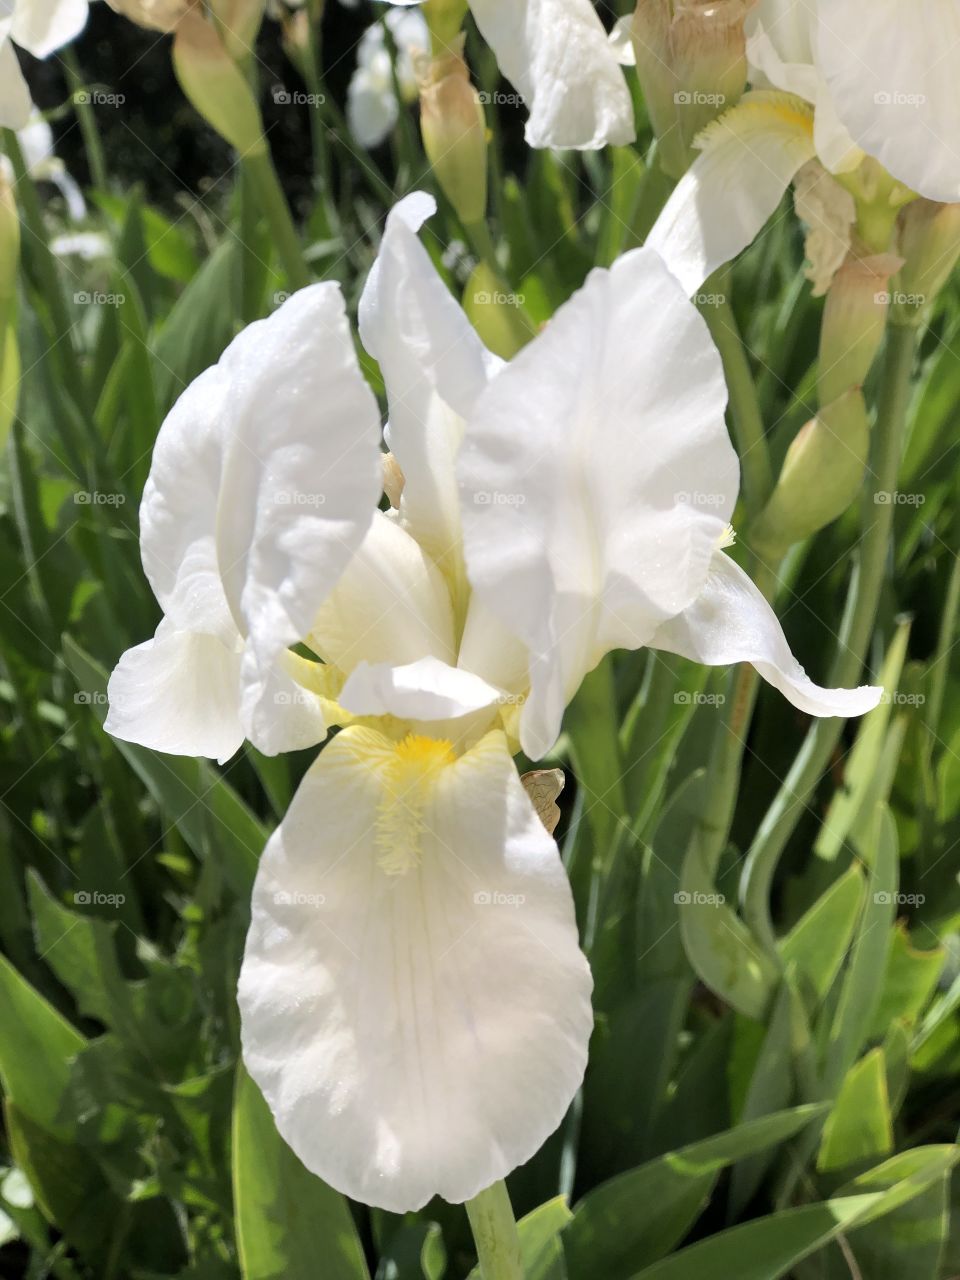 Iris flowers of Spring